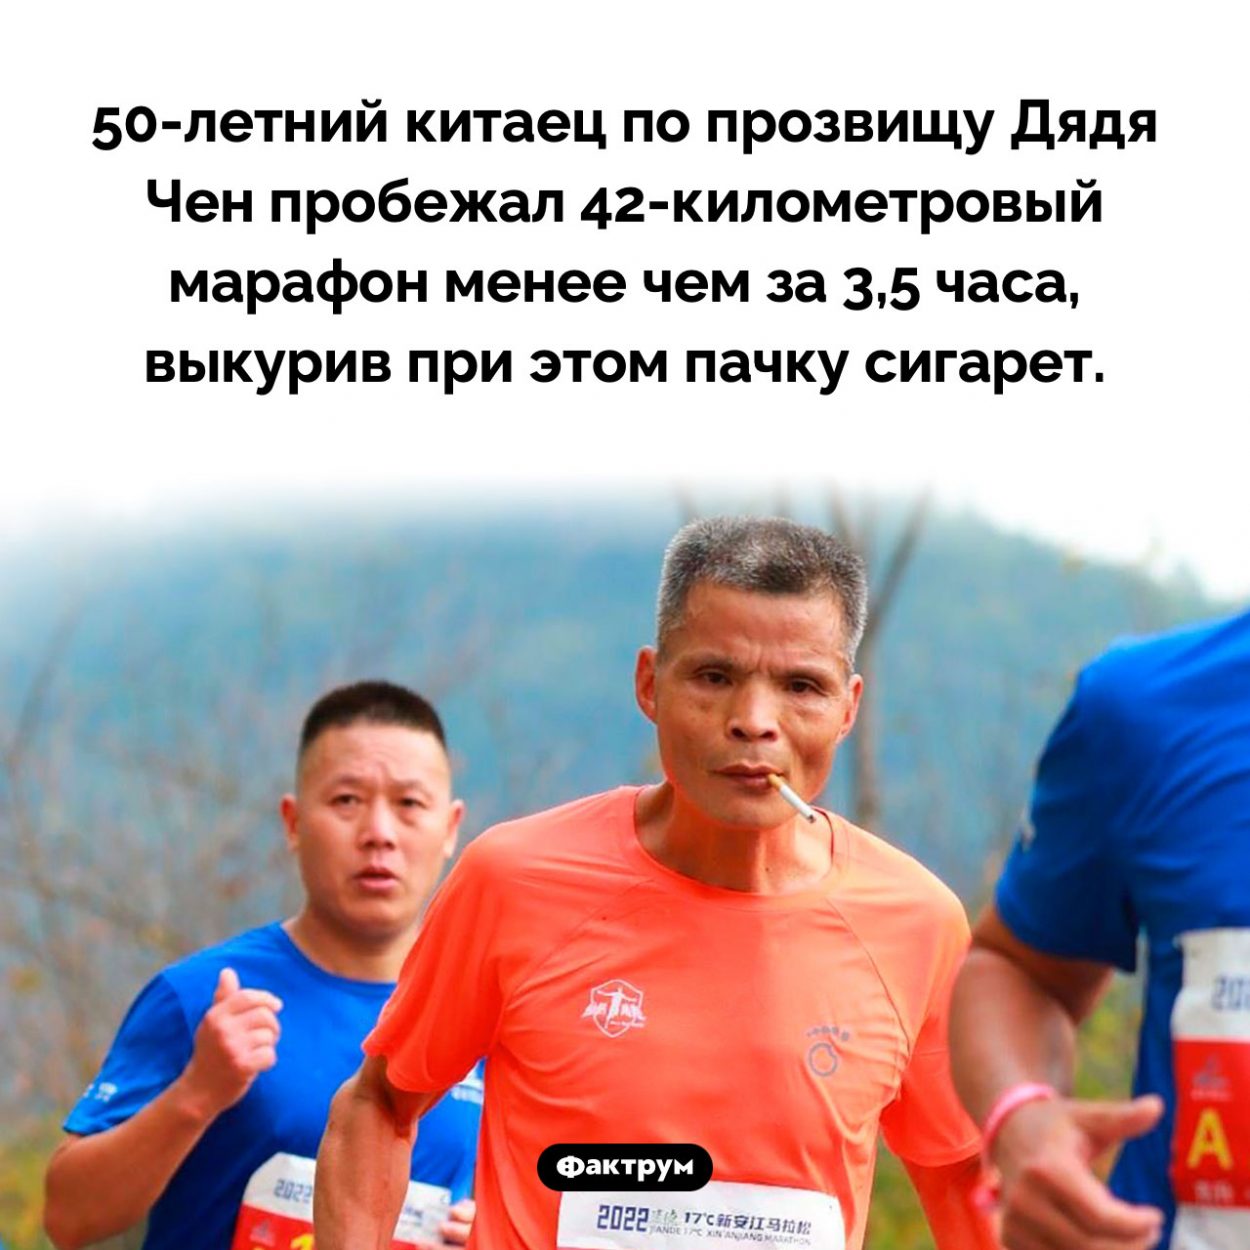 Марафонец Дядя Чен. 50-летний китаец по прозвищу Дядя Чен пробежал 42-километровый марафон менее чем за 3,5 часа, выкурив при этом пачку сигарет.